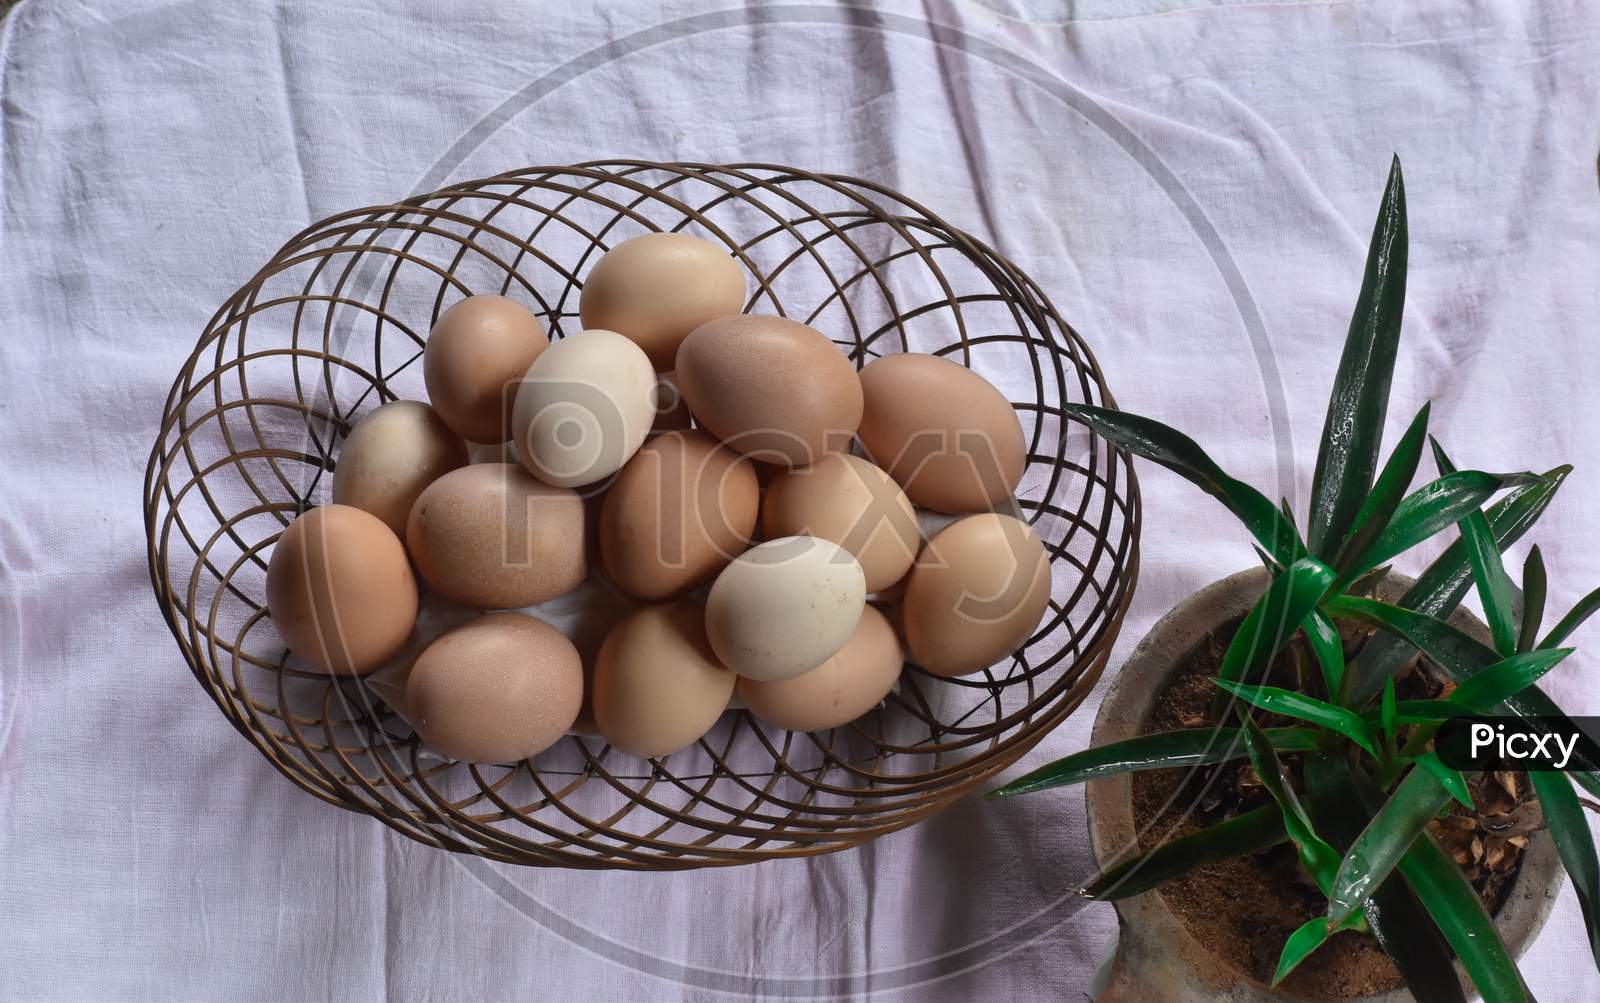 chicken eggs in basket